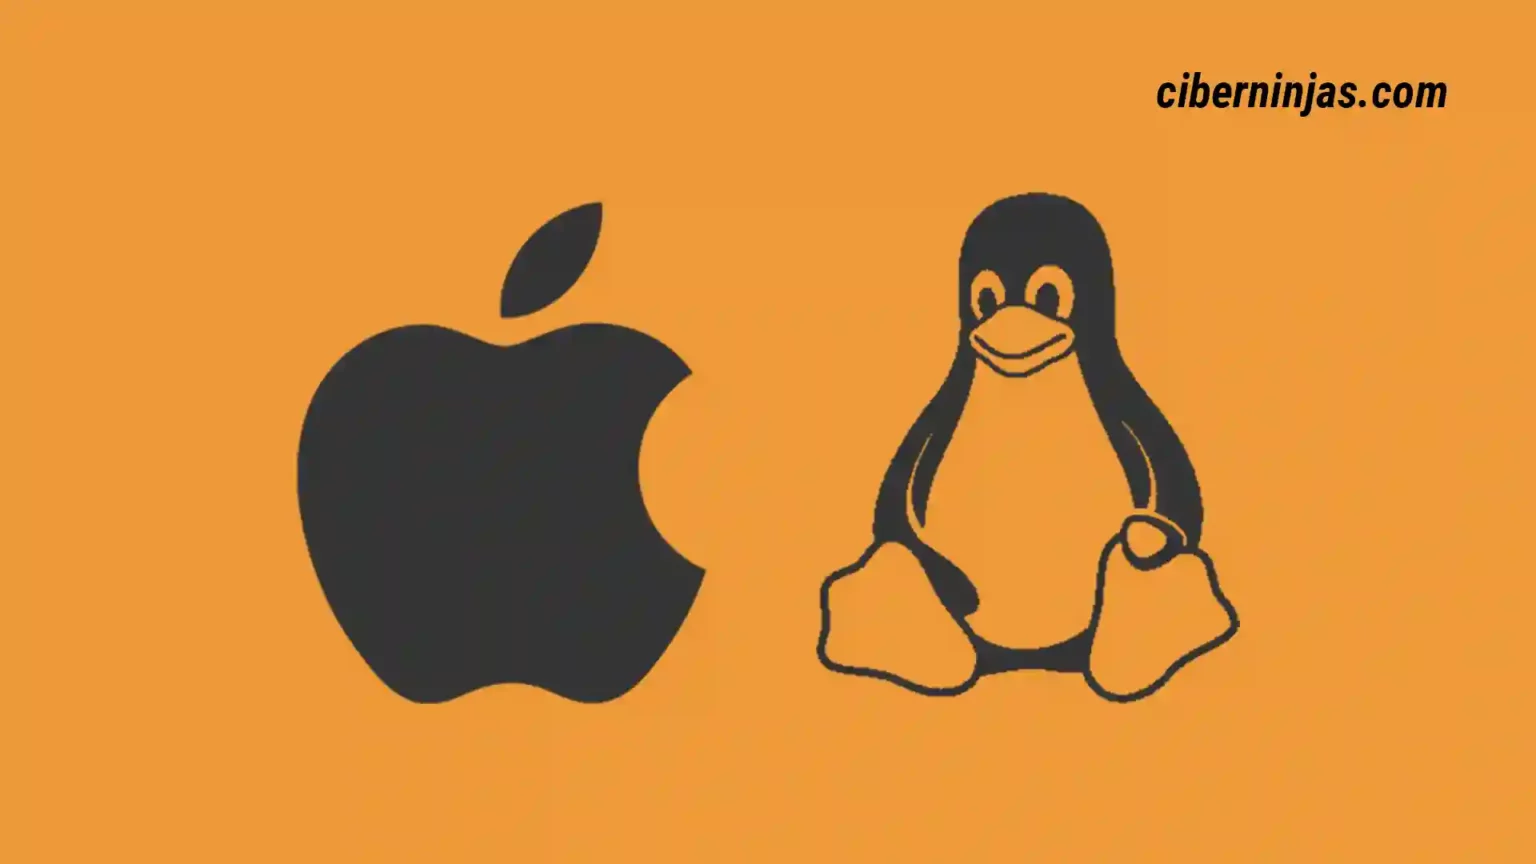 Linux o macOS, ¿Cuál es el sistema operativo más seguro?